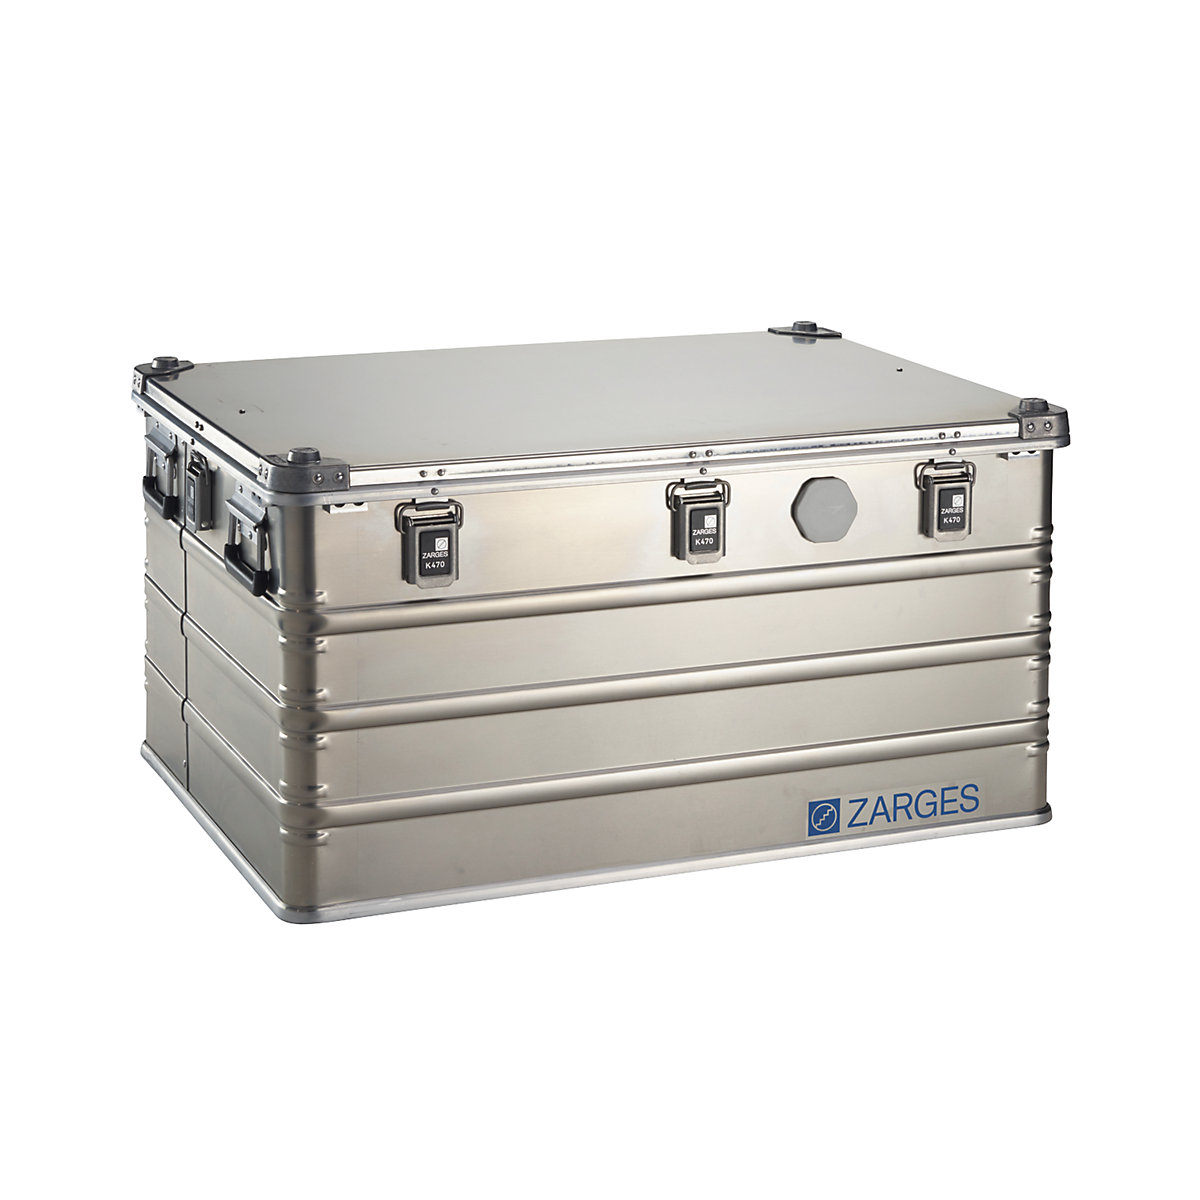 IP67 aluminium universal container – ZARGES